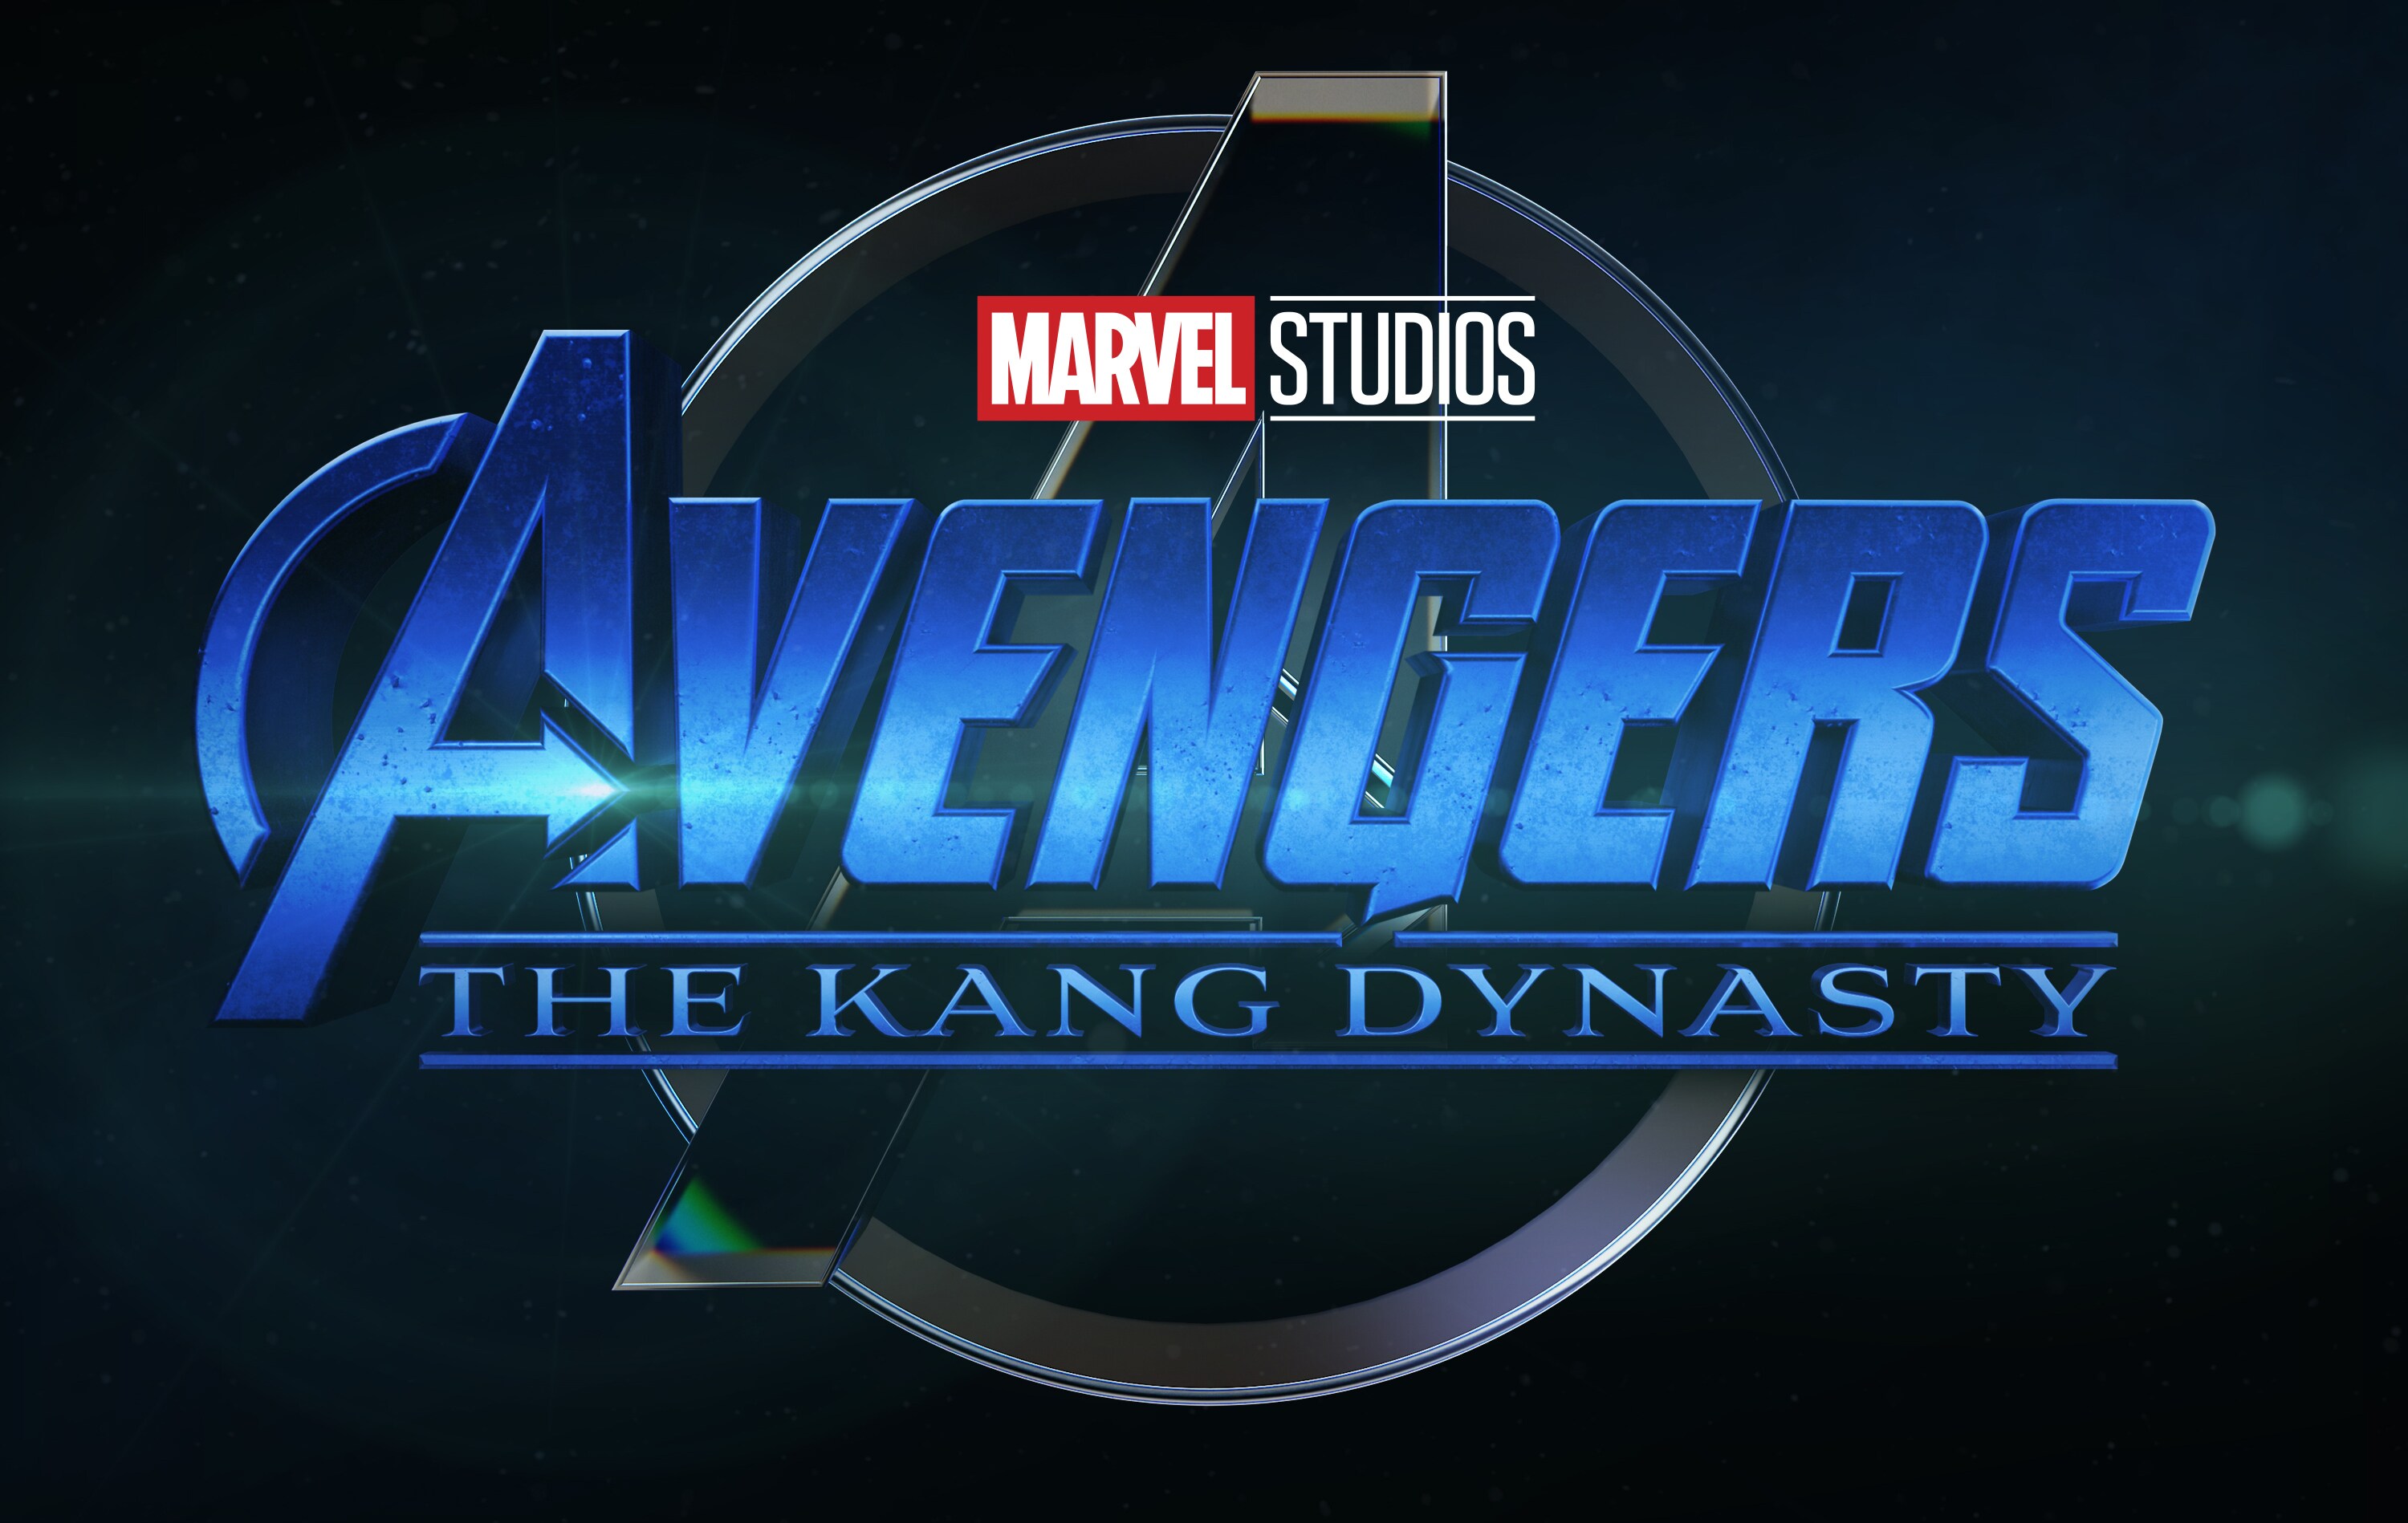 Avengers The Kang Dinasty